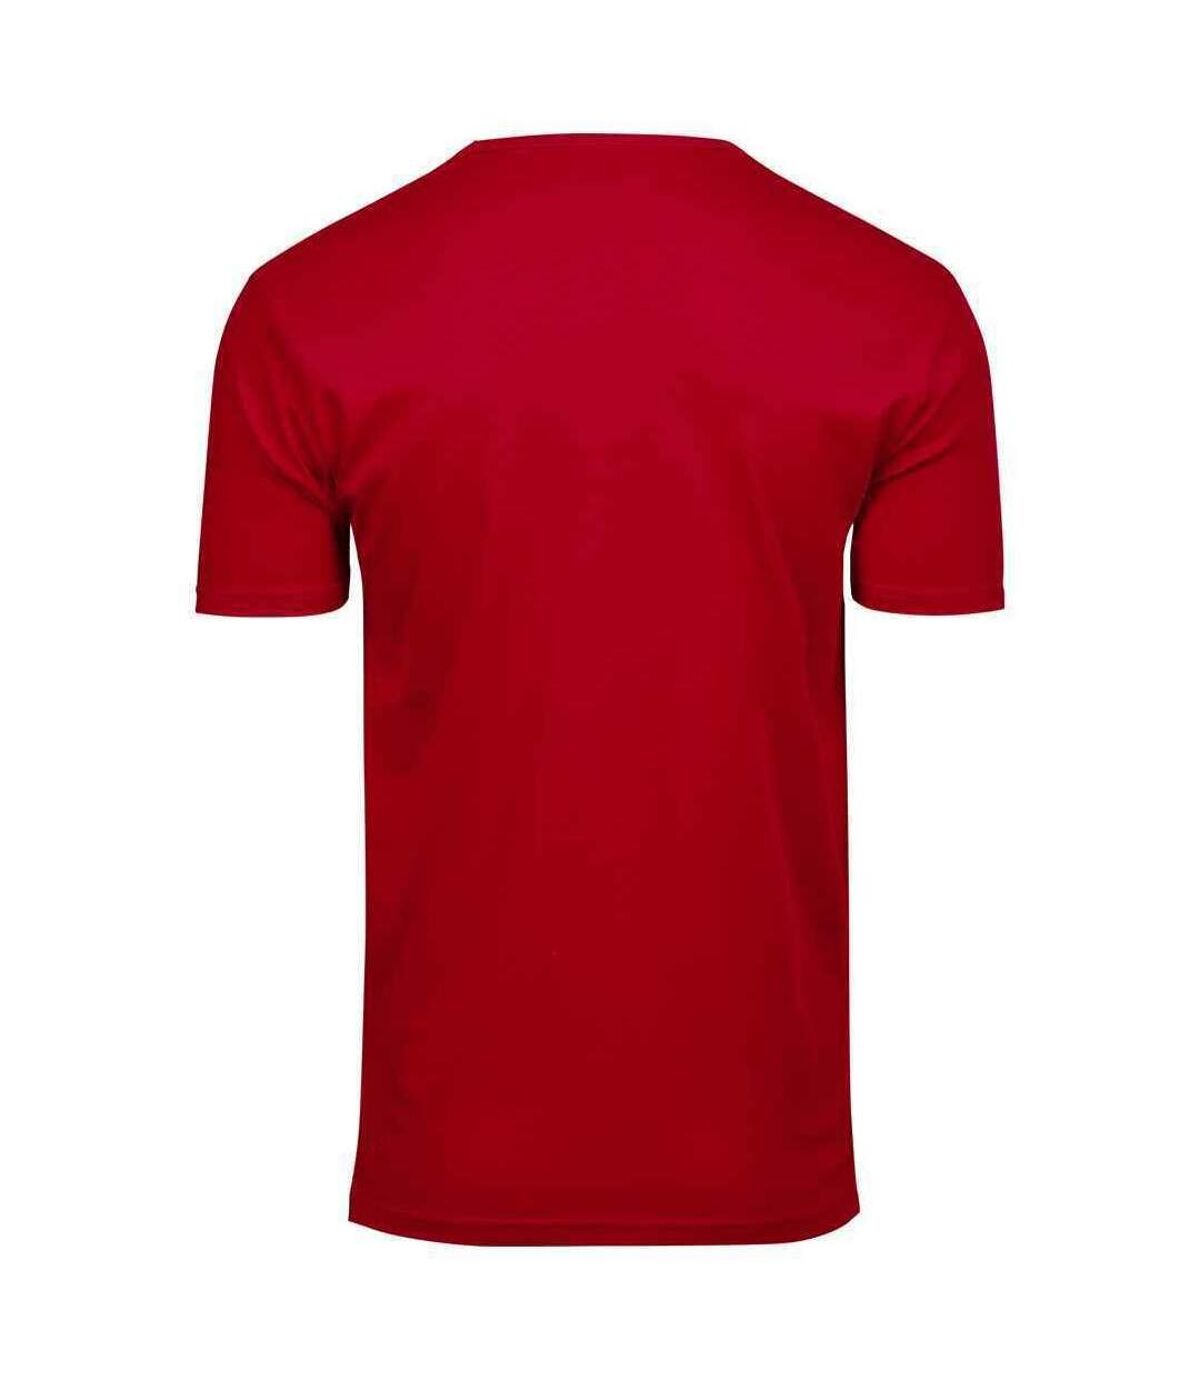 Tee Jays Mens Interlock T-Shirt (Red) - UTPC4094